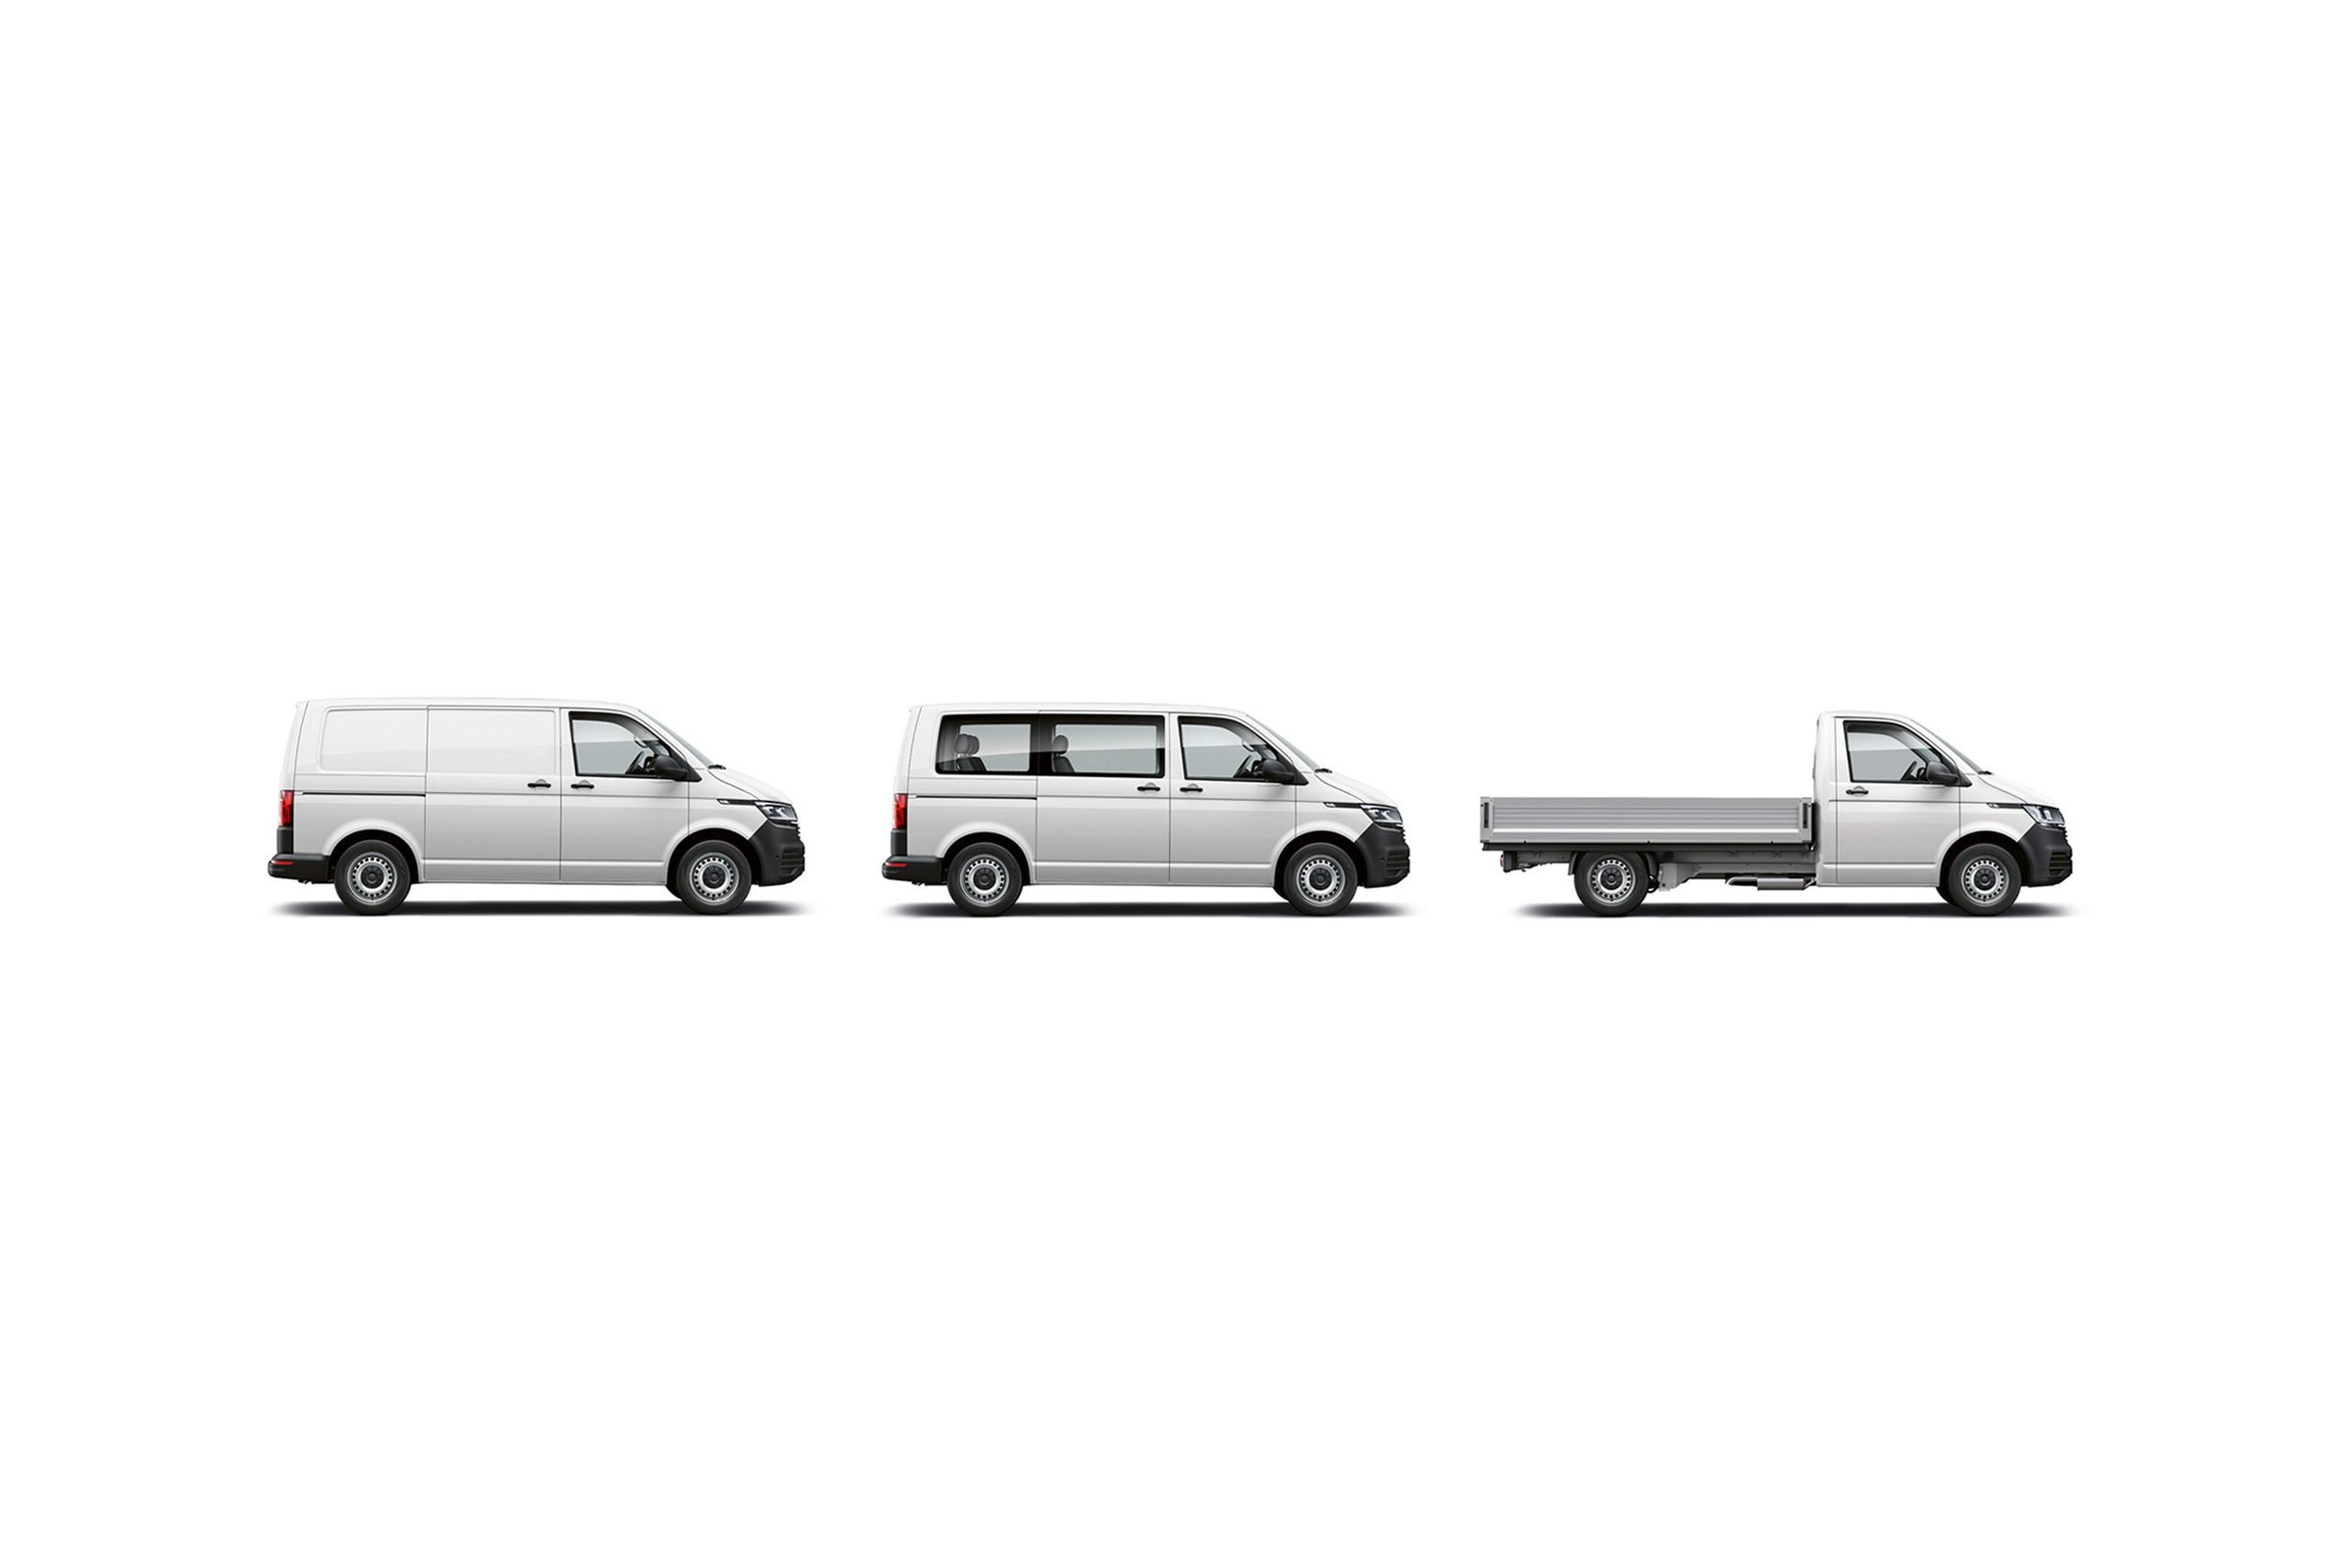 3 versões da carrinha comercial VW Transporter: carga de mercadorias, de passageiros e de caixa aberta.